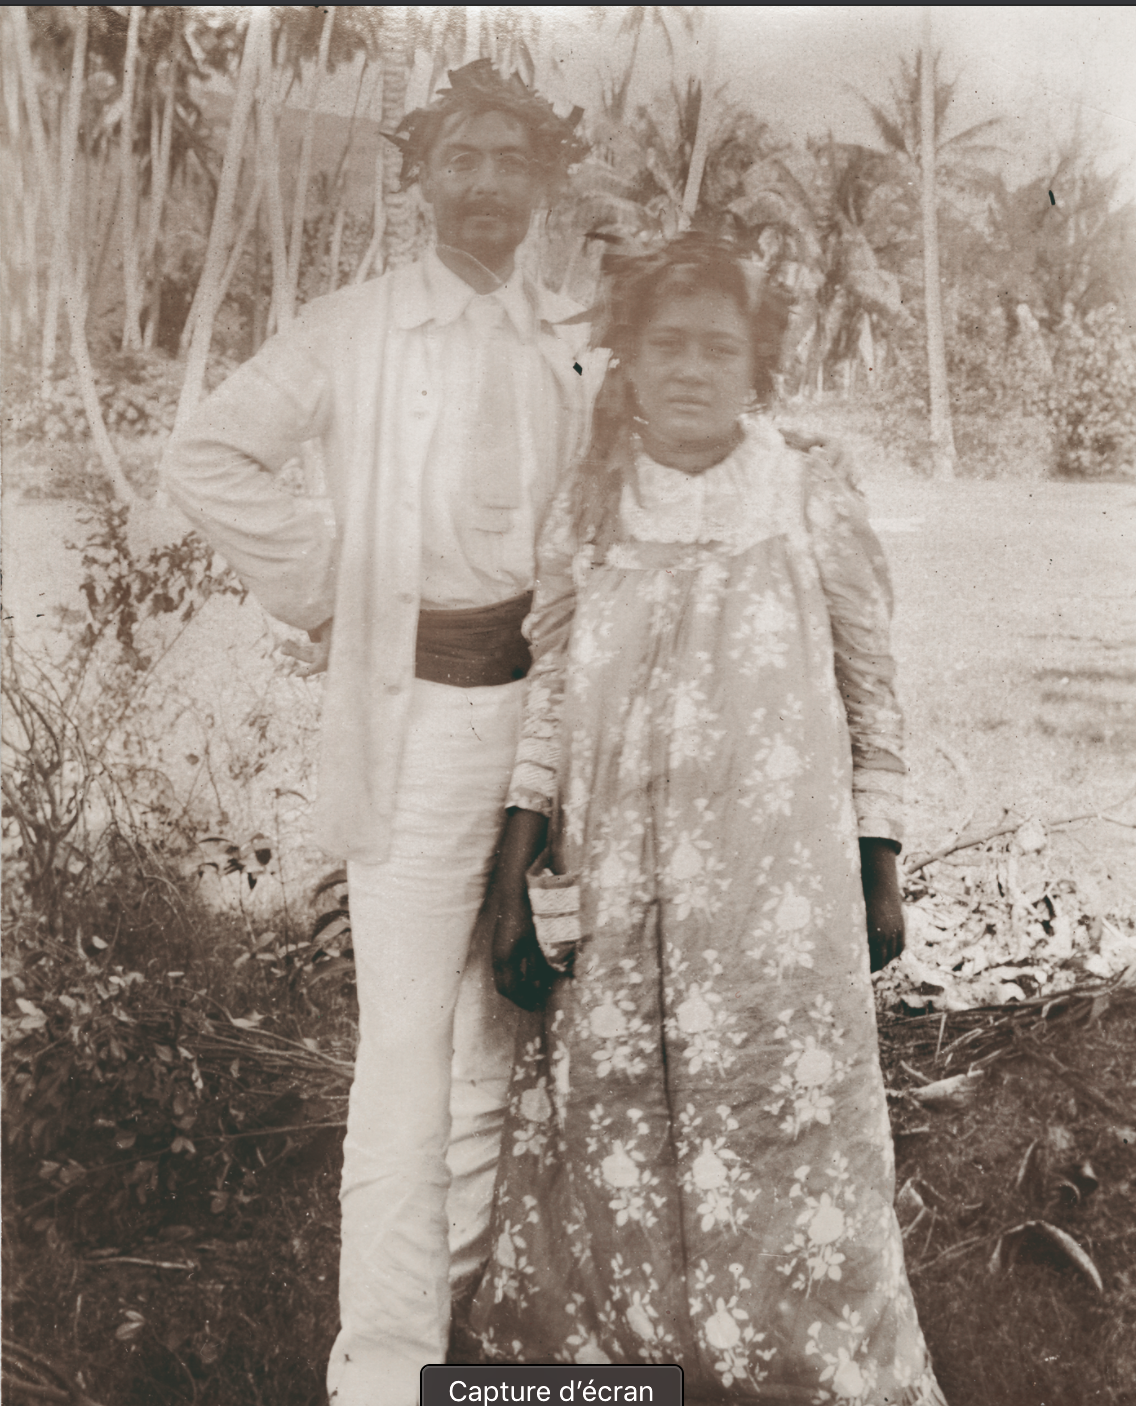 Gauguin en Polynésie avec une femme photo N et BPart. 2-Atlaneastro